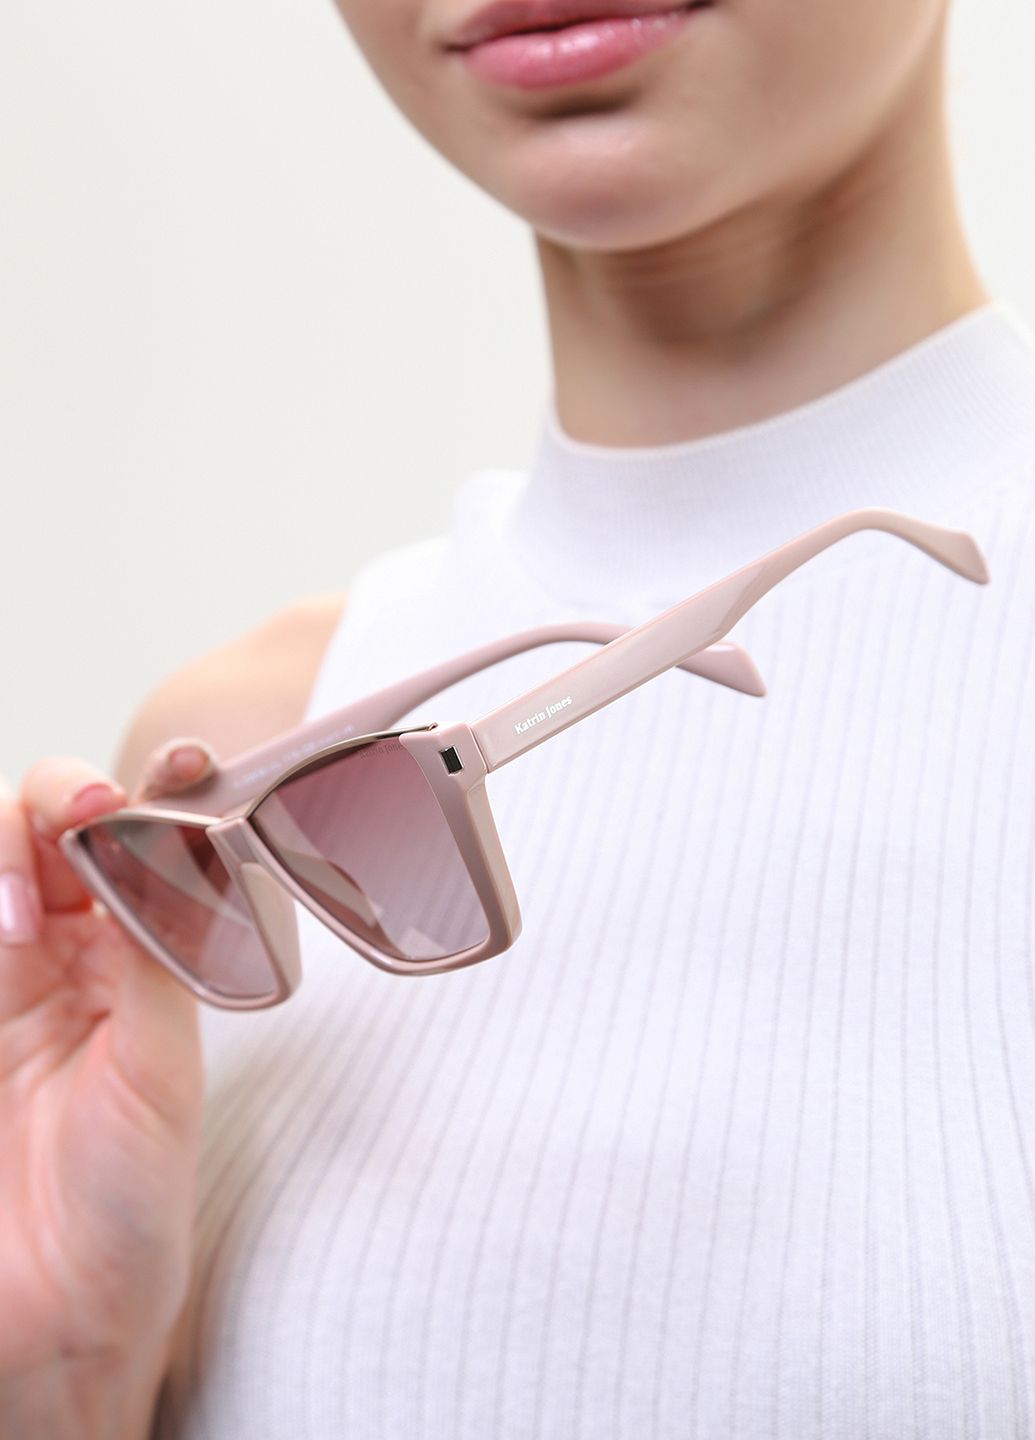 Купити Жіночі сонцезахисні окуляри Katrin Jones з поляризацією KJ0858 180040 - Бежевий в інтернет-магазині